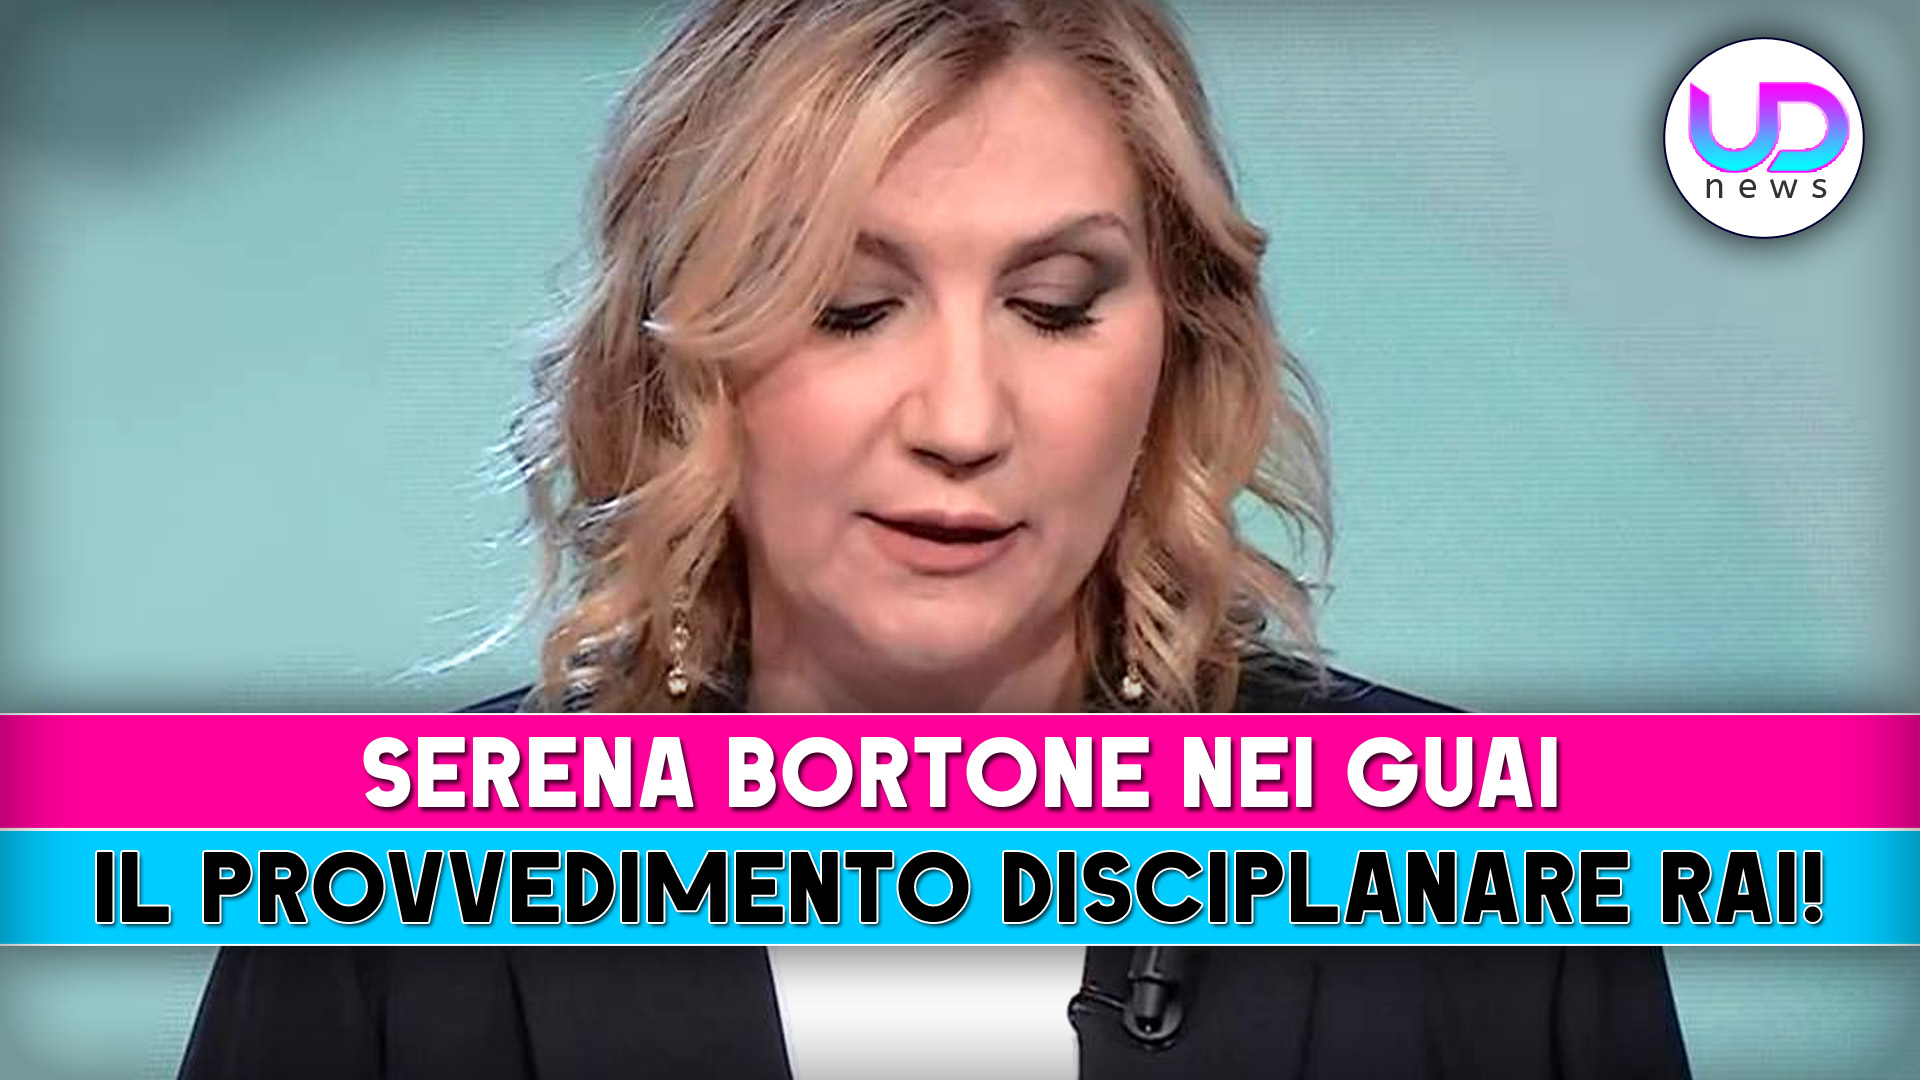 Serena Bortone Nei Guai: Il Provvedimento Rai!